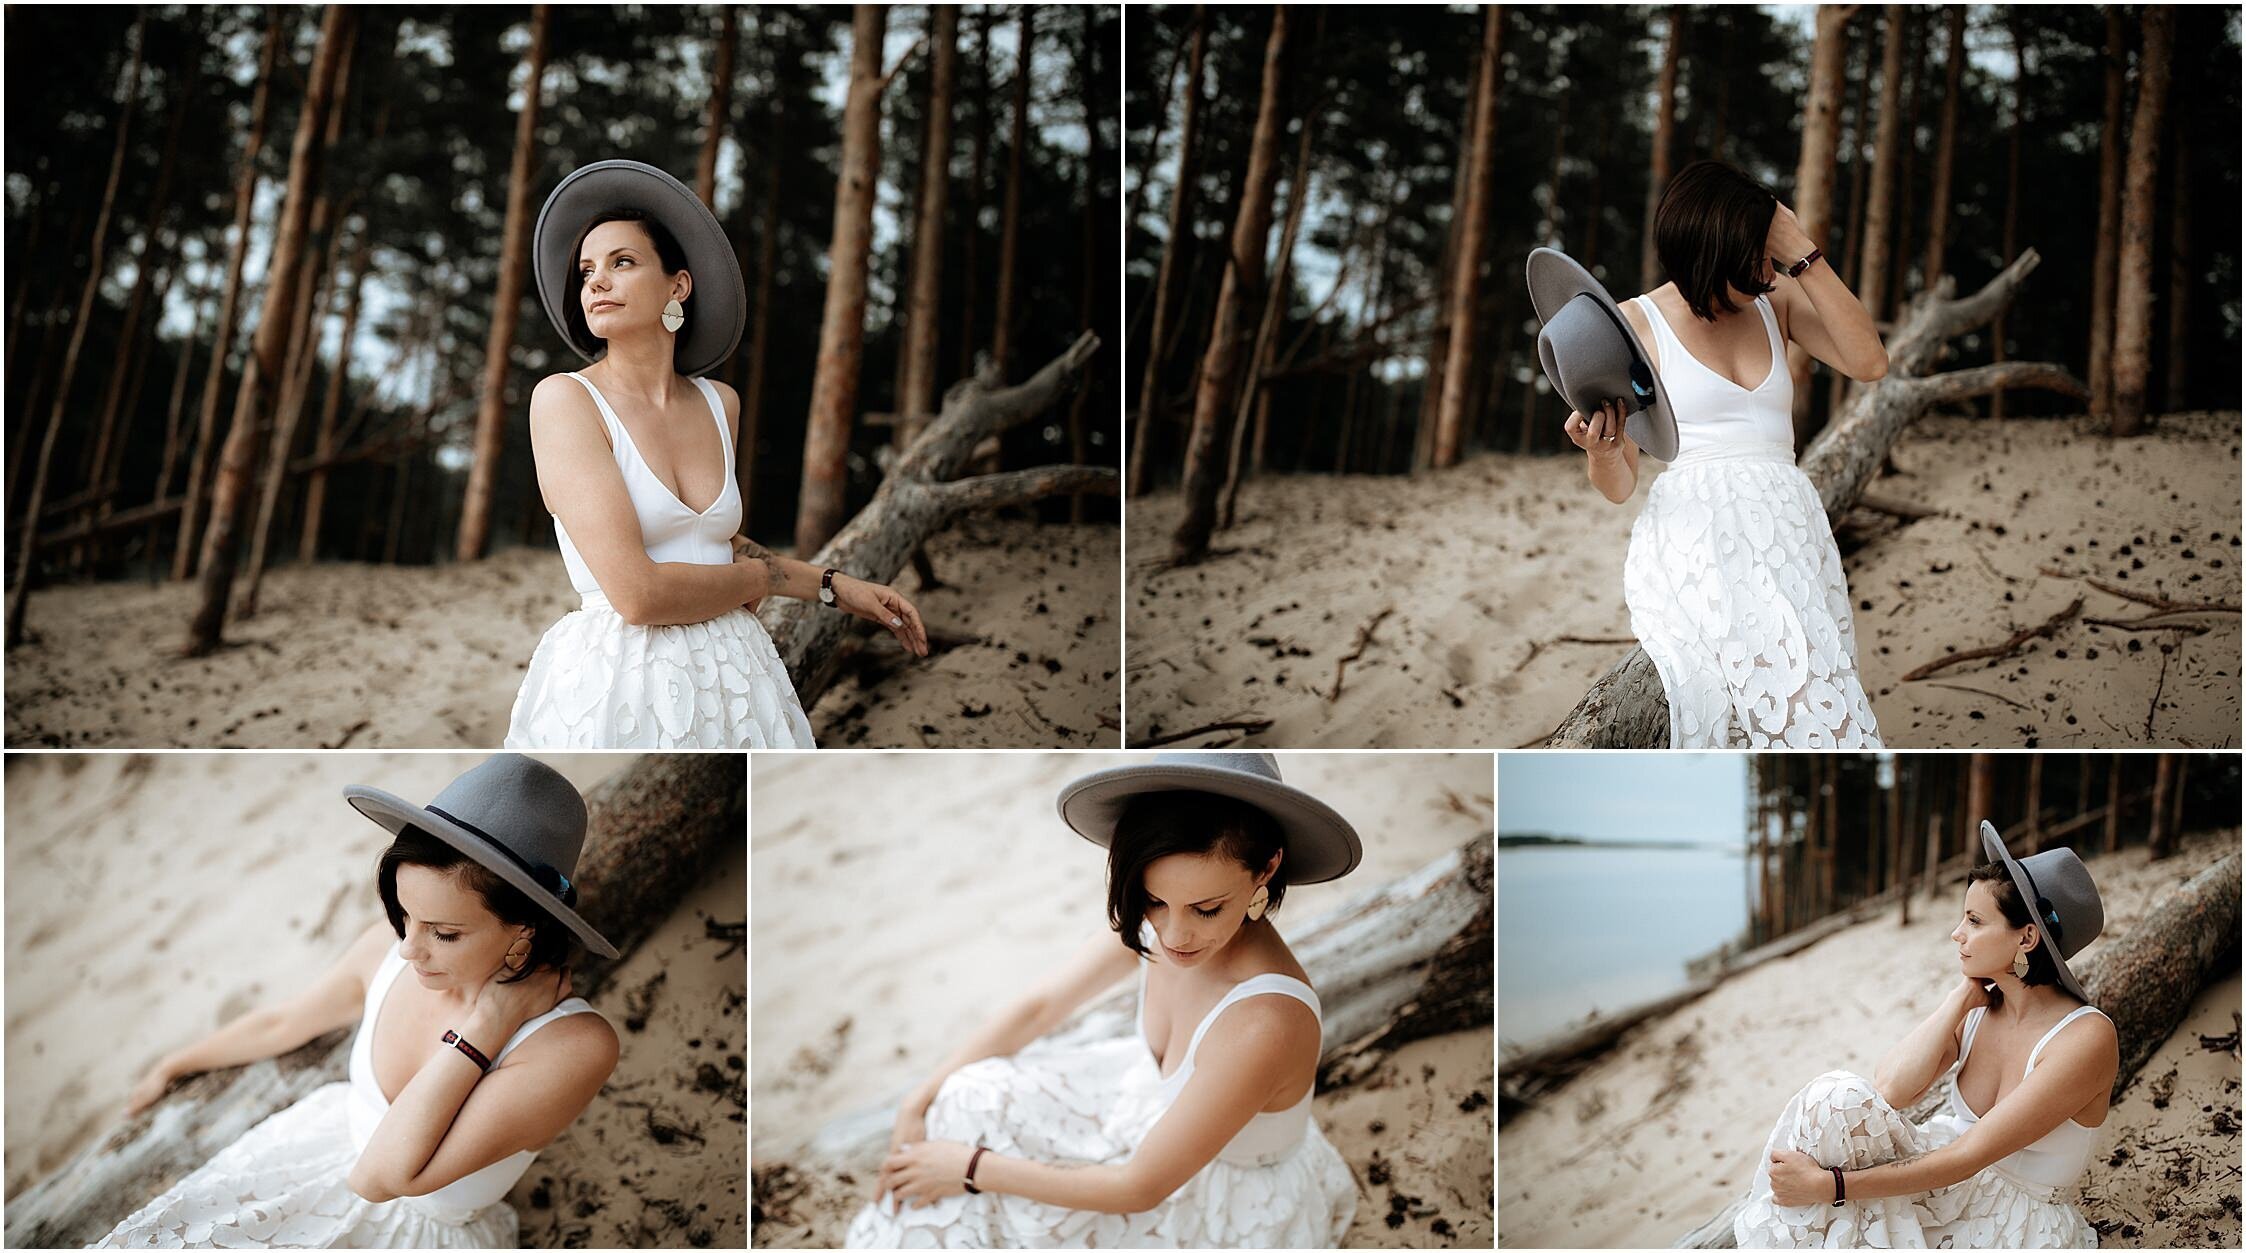 Zanda+Auckland+wedding+photographer+romantic+couple+portrait++white+sand+dunes+Europe+Latvia+New+Zealand_10.jpeg